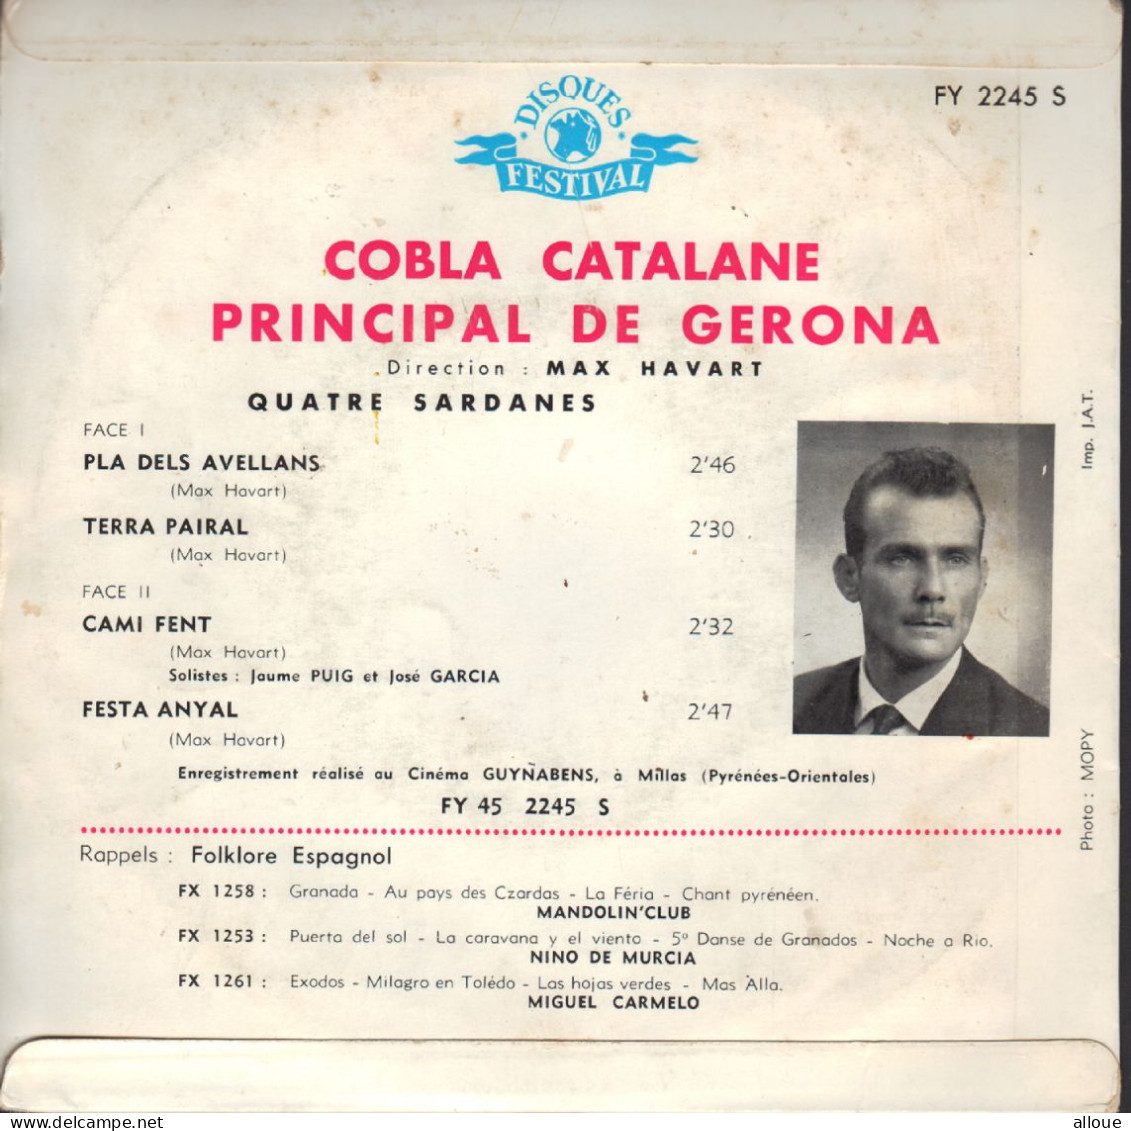 COBLA CATALANE PRINCIPAL DE GERONA - FR EP - PLA DELS AVELLANS + 3 - World Music